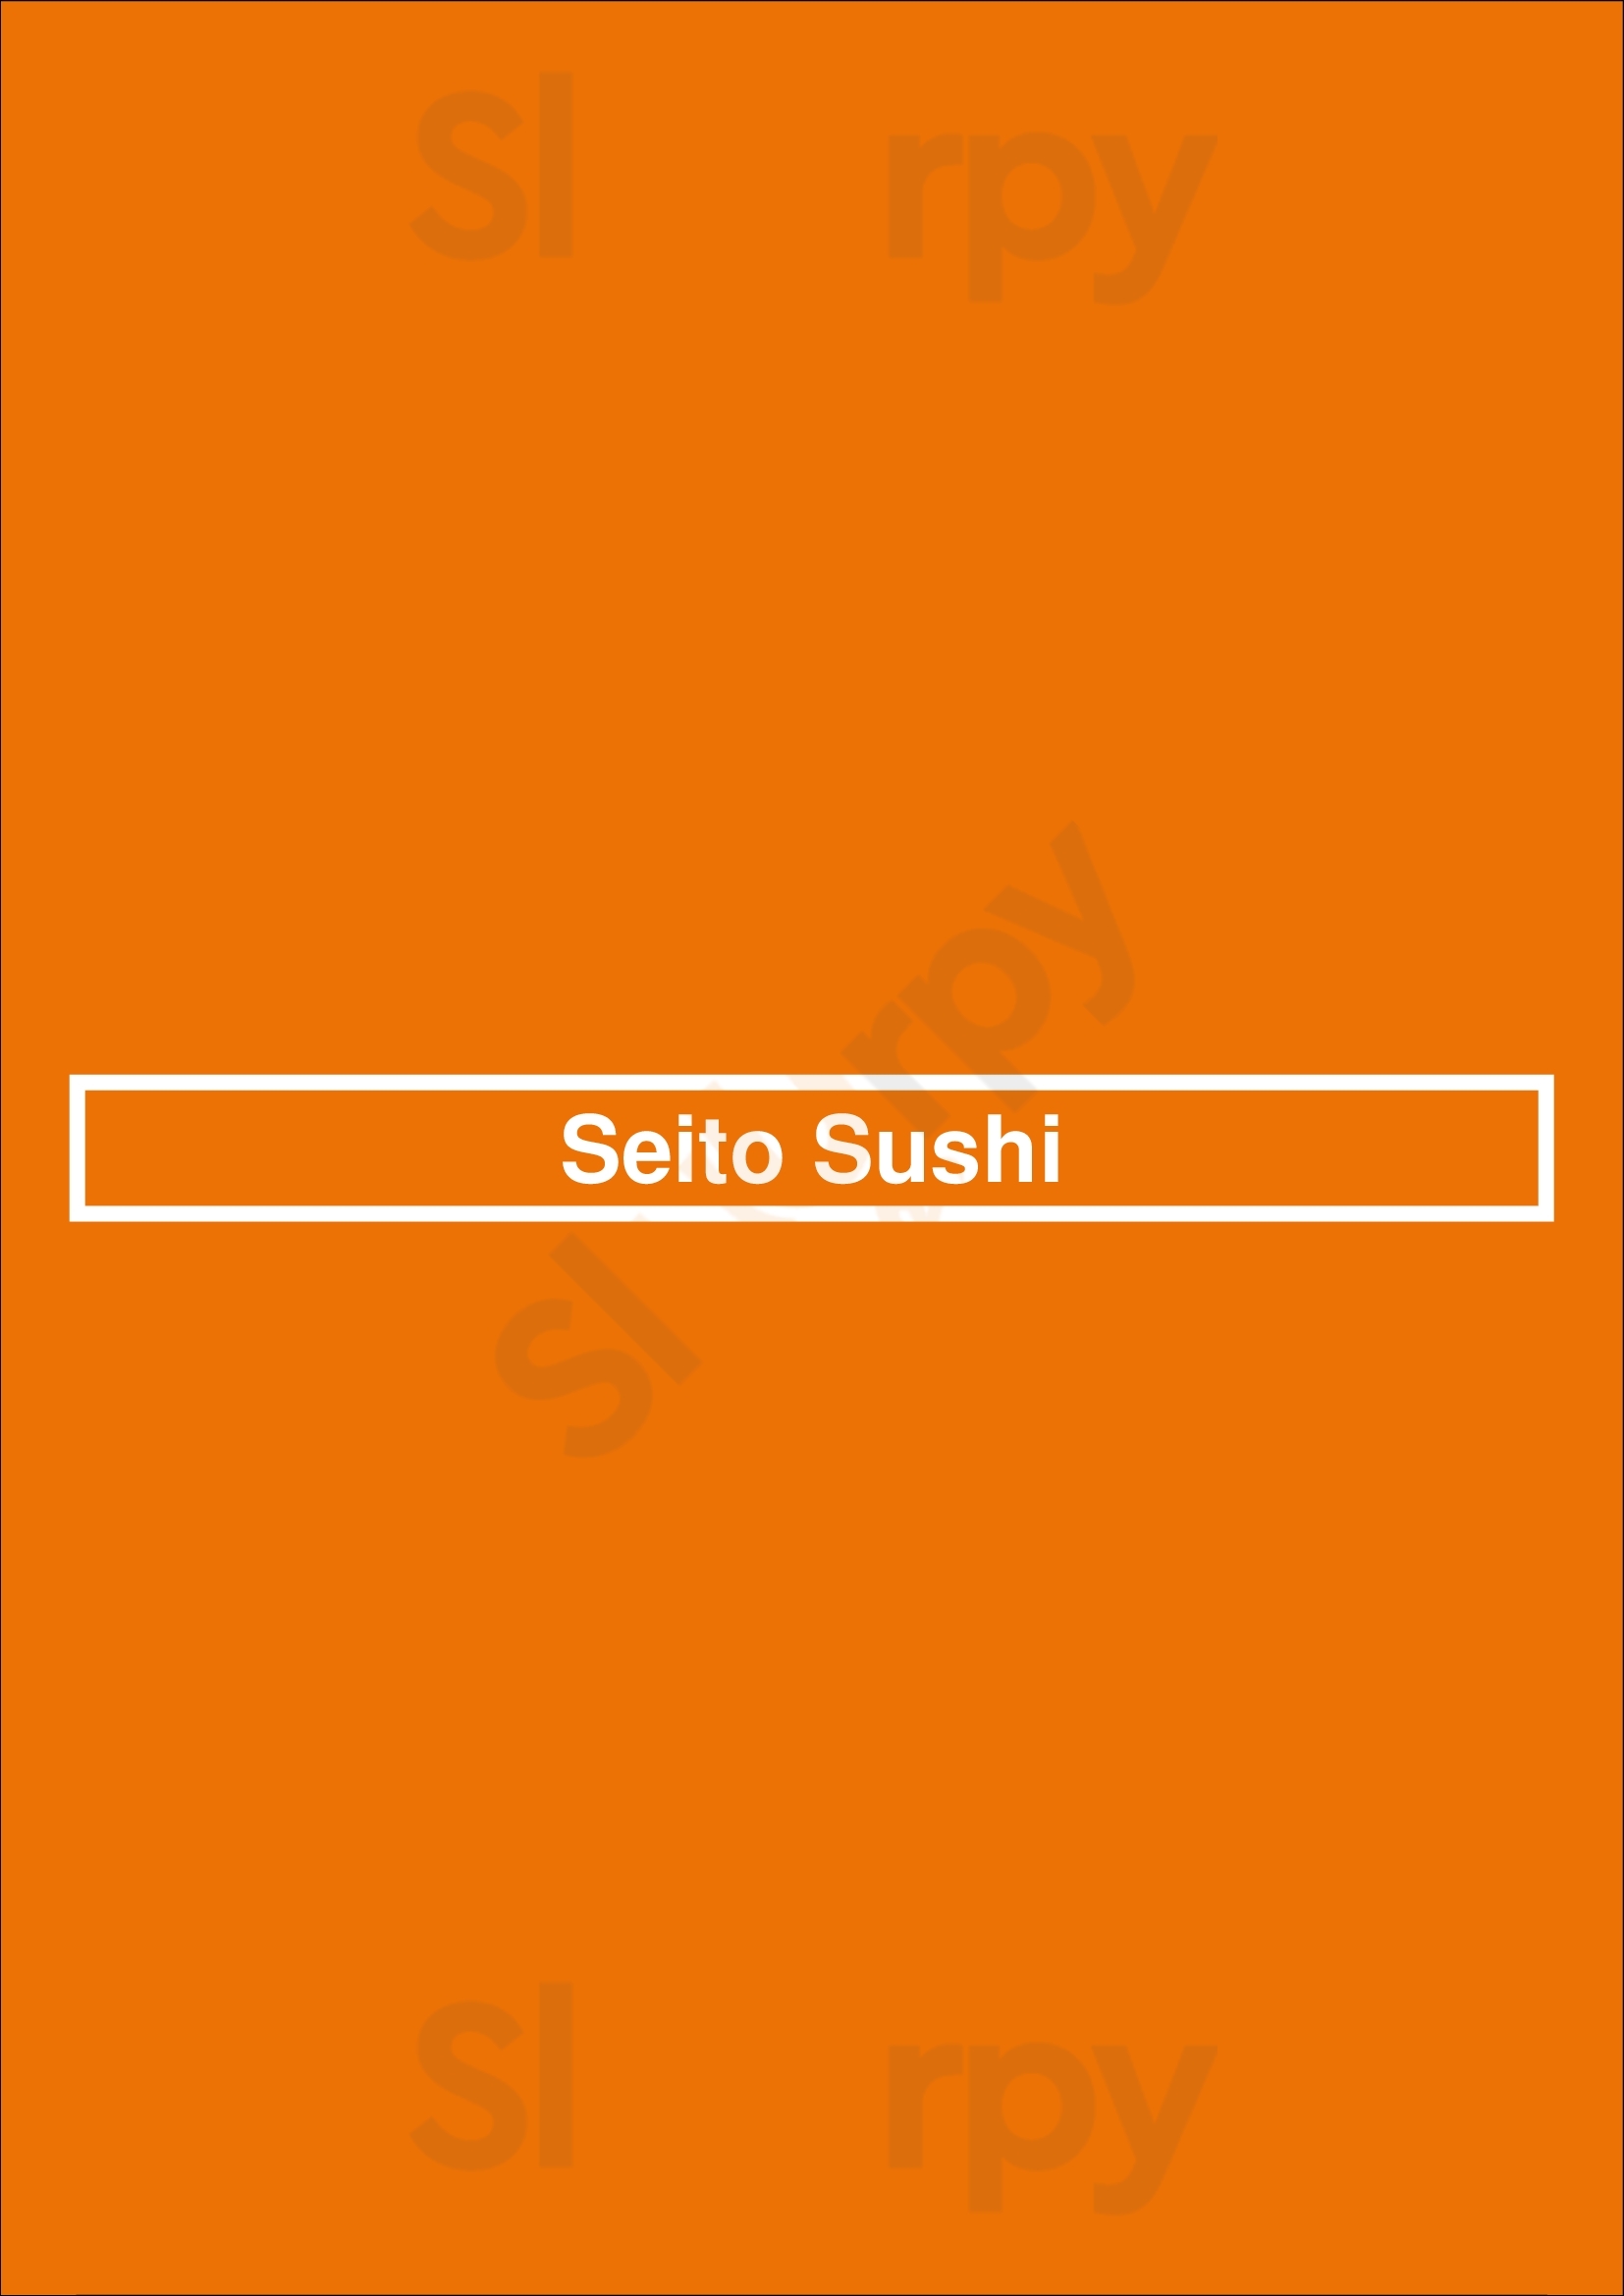 Seito Sushi Baldwin Park Orlando Menu - 1